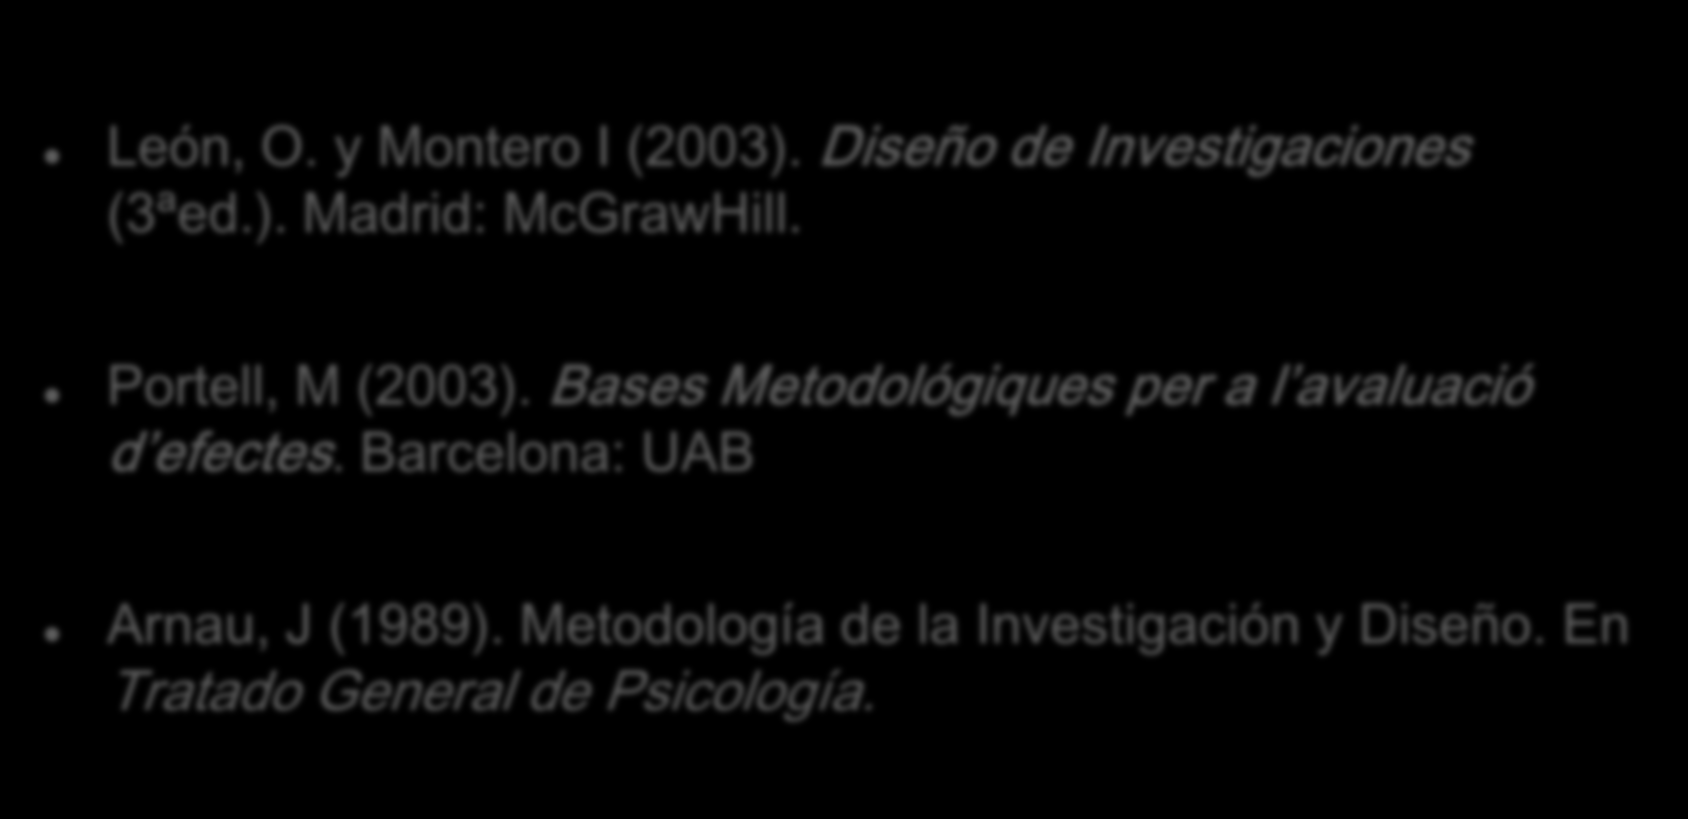 BIBLIOGRAFÍA León, O. y Montero I (2003). Diseño de Investigaciones (3ªed.). Madrid: McGrawHill. Portell, M (2003).